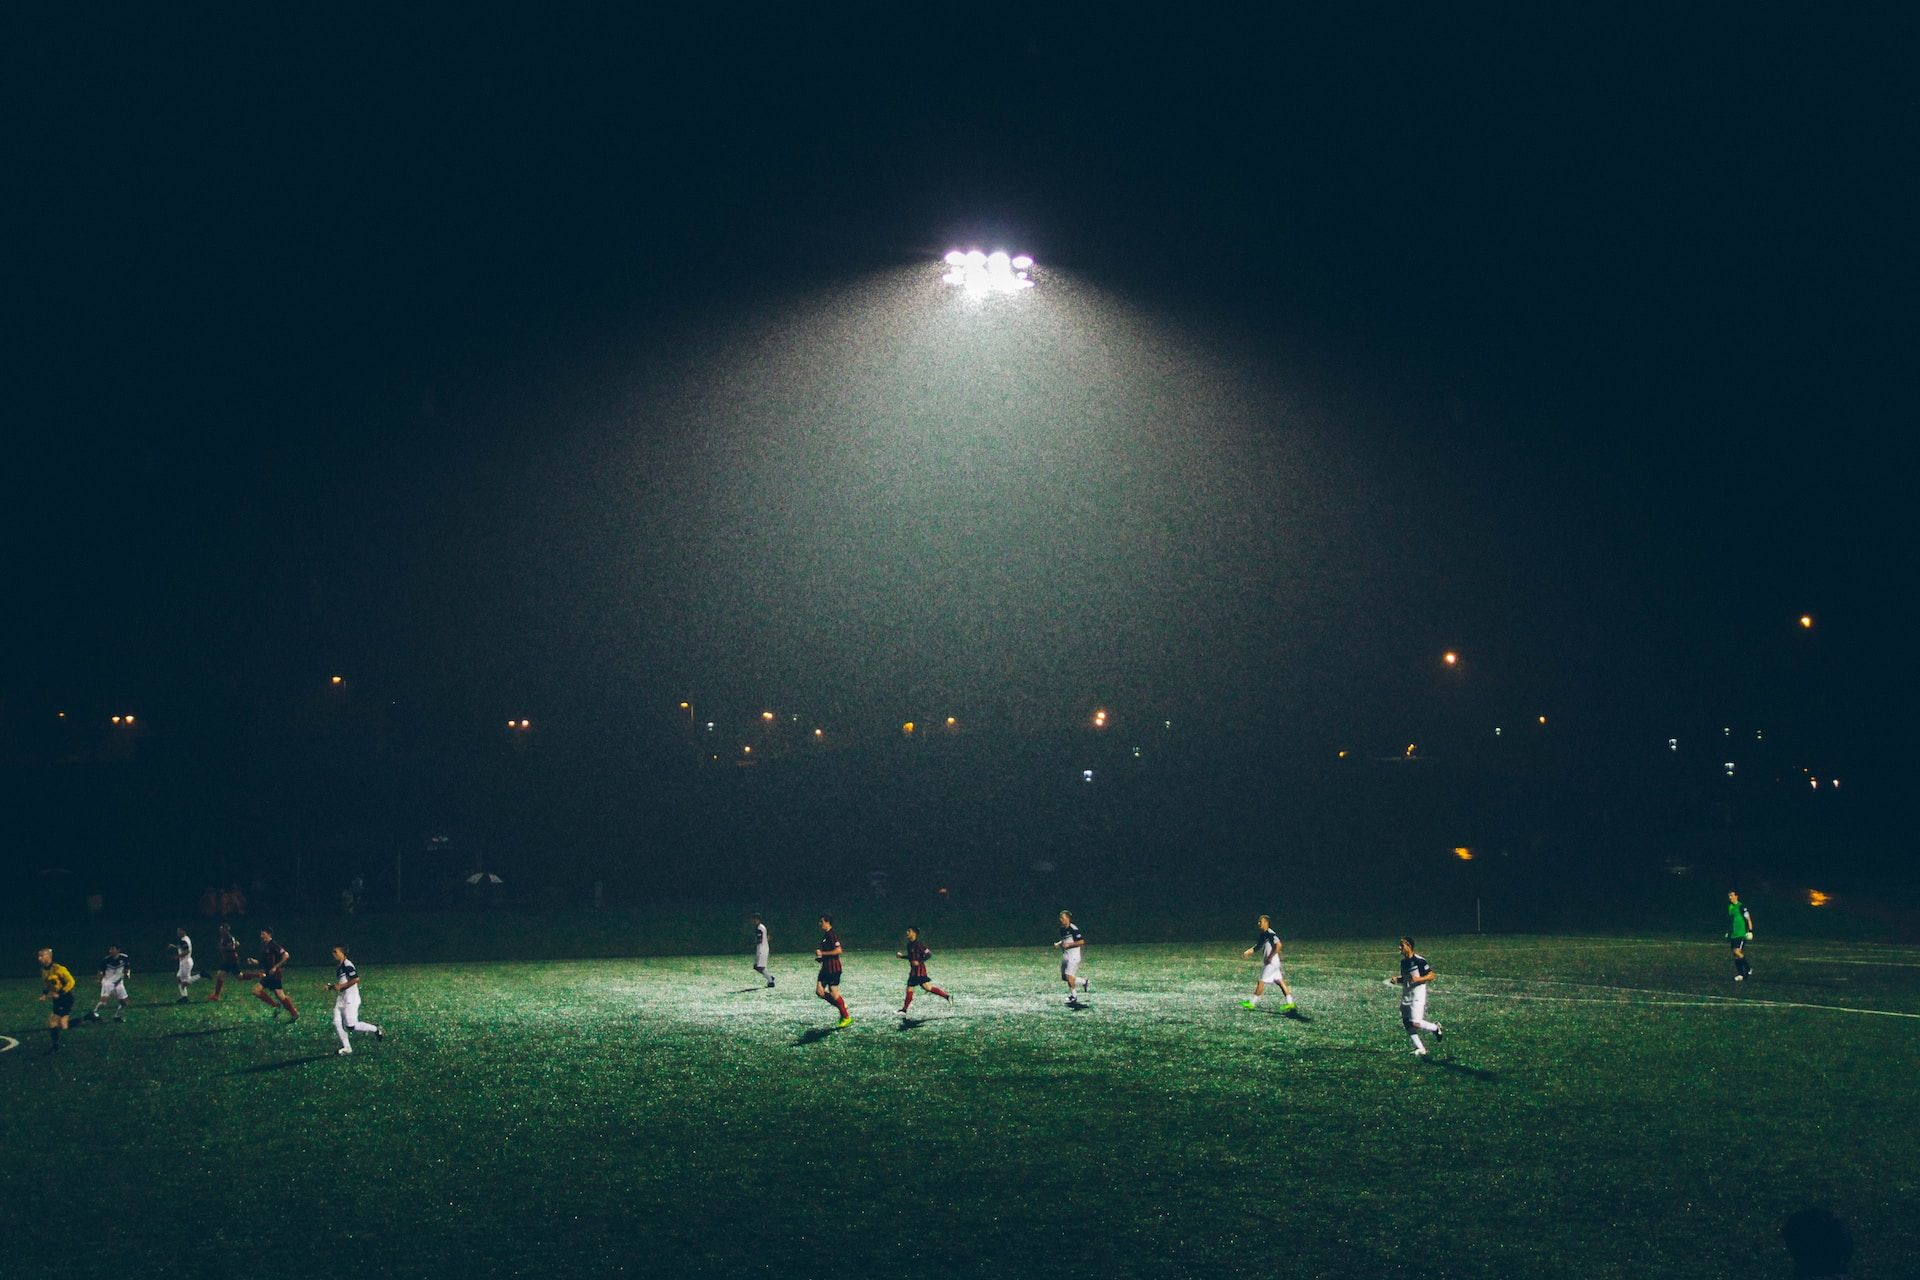 une partie de foot en soirée, sou sle feux des lampes - Photo by Abigail Keenan on https://unsplash.com/fr/photos/8-s5QuUBtyM